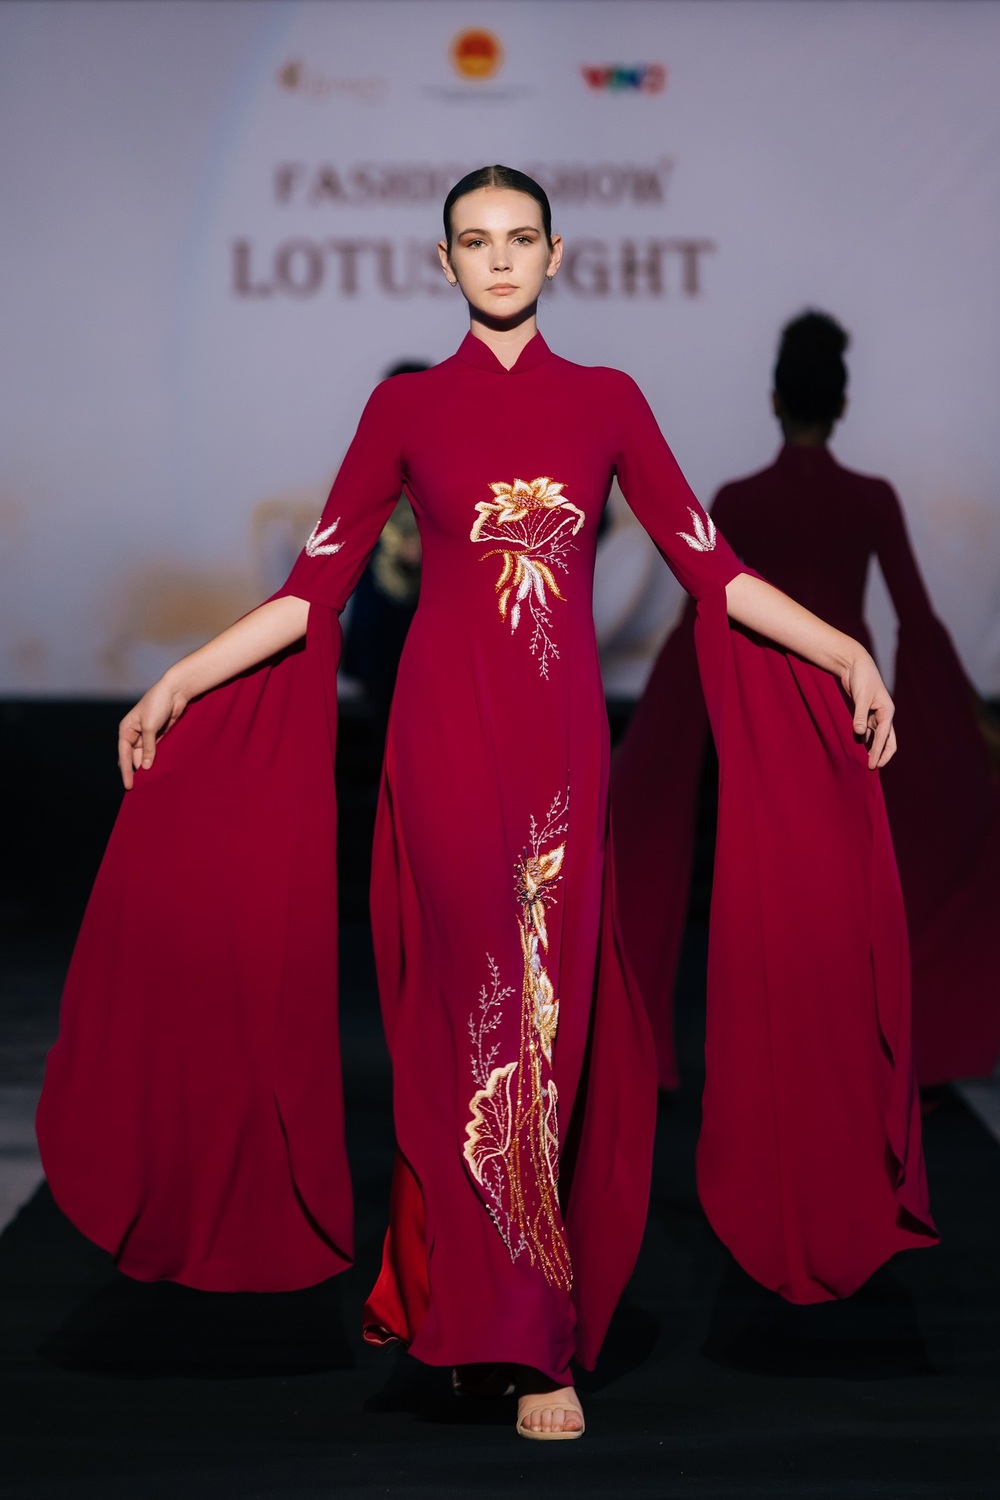 Văn hoá Việt toả sáng trong thiết kế của Trần Phương Hoa tại Úc - 1